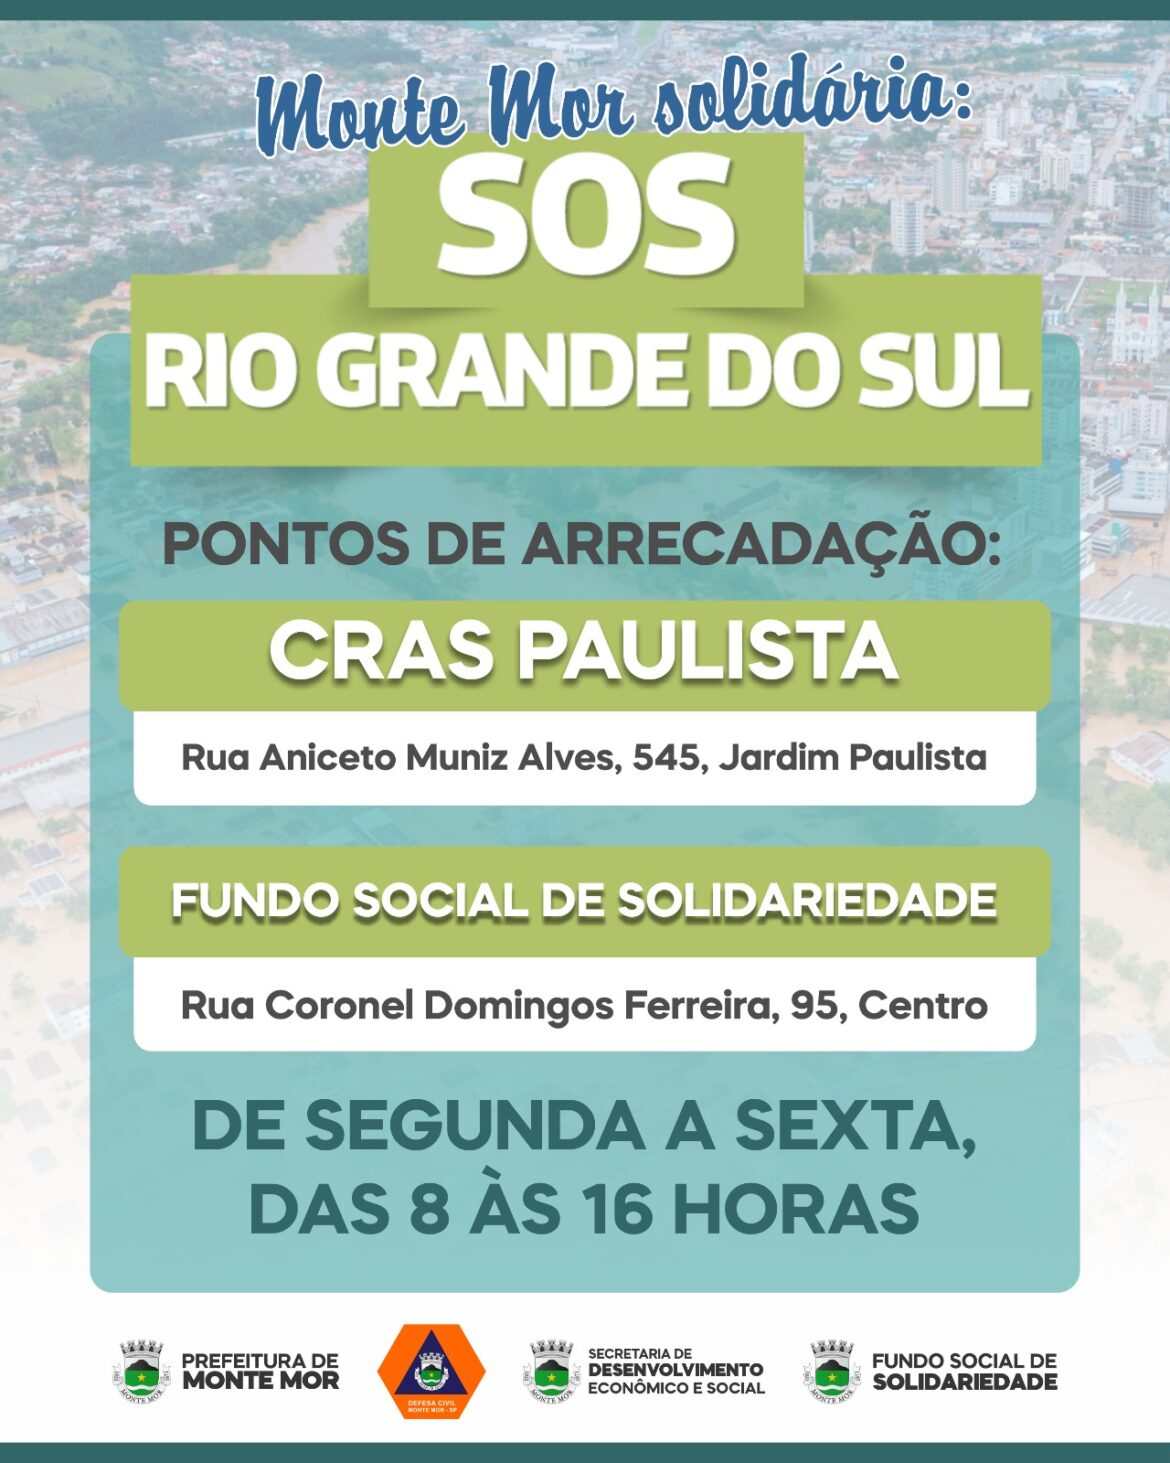 Monte Mor Solidária: SOS RIO GRANDE DO SUL